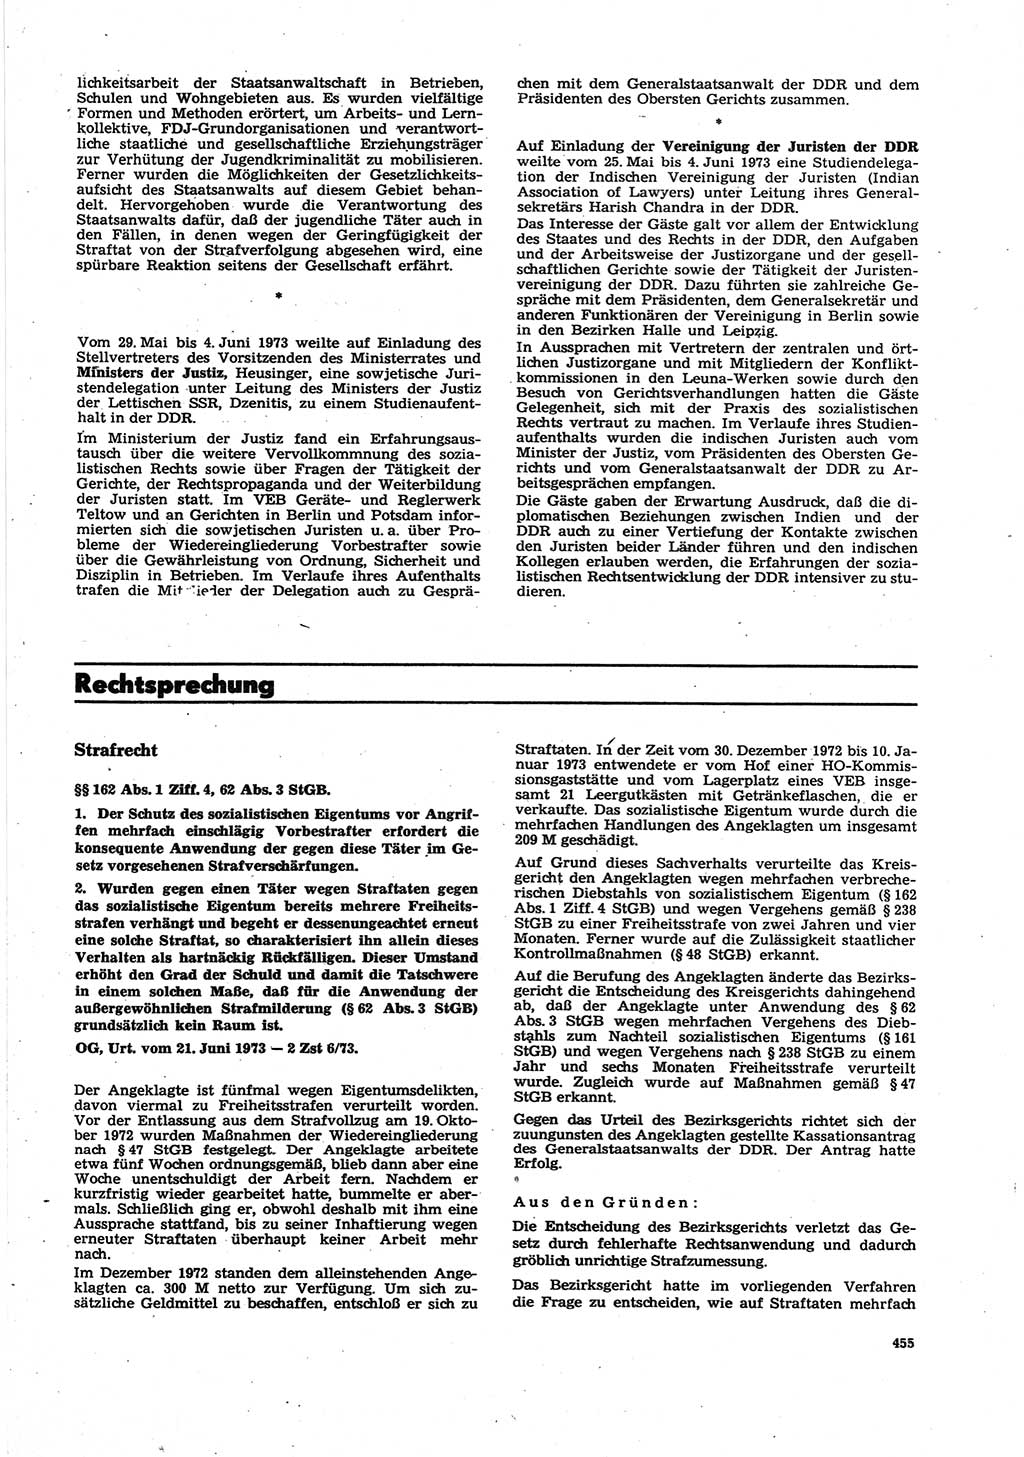 Neue Justiz (NJ), Zeitschrift für Recht und Rechtswissenschaft [Deutsche Demokratische Republik (DDR)], 27. Jahrgang 1973, Seite 455 (NJ DDR 1973, S. 455)